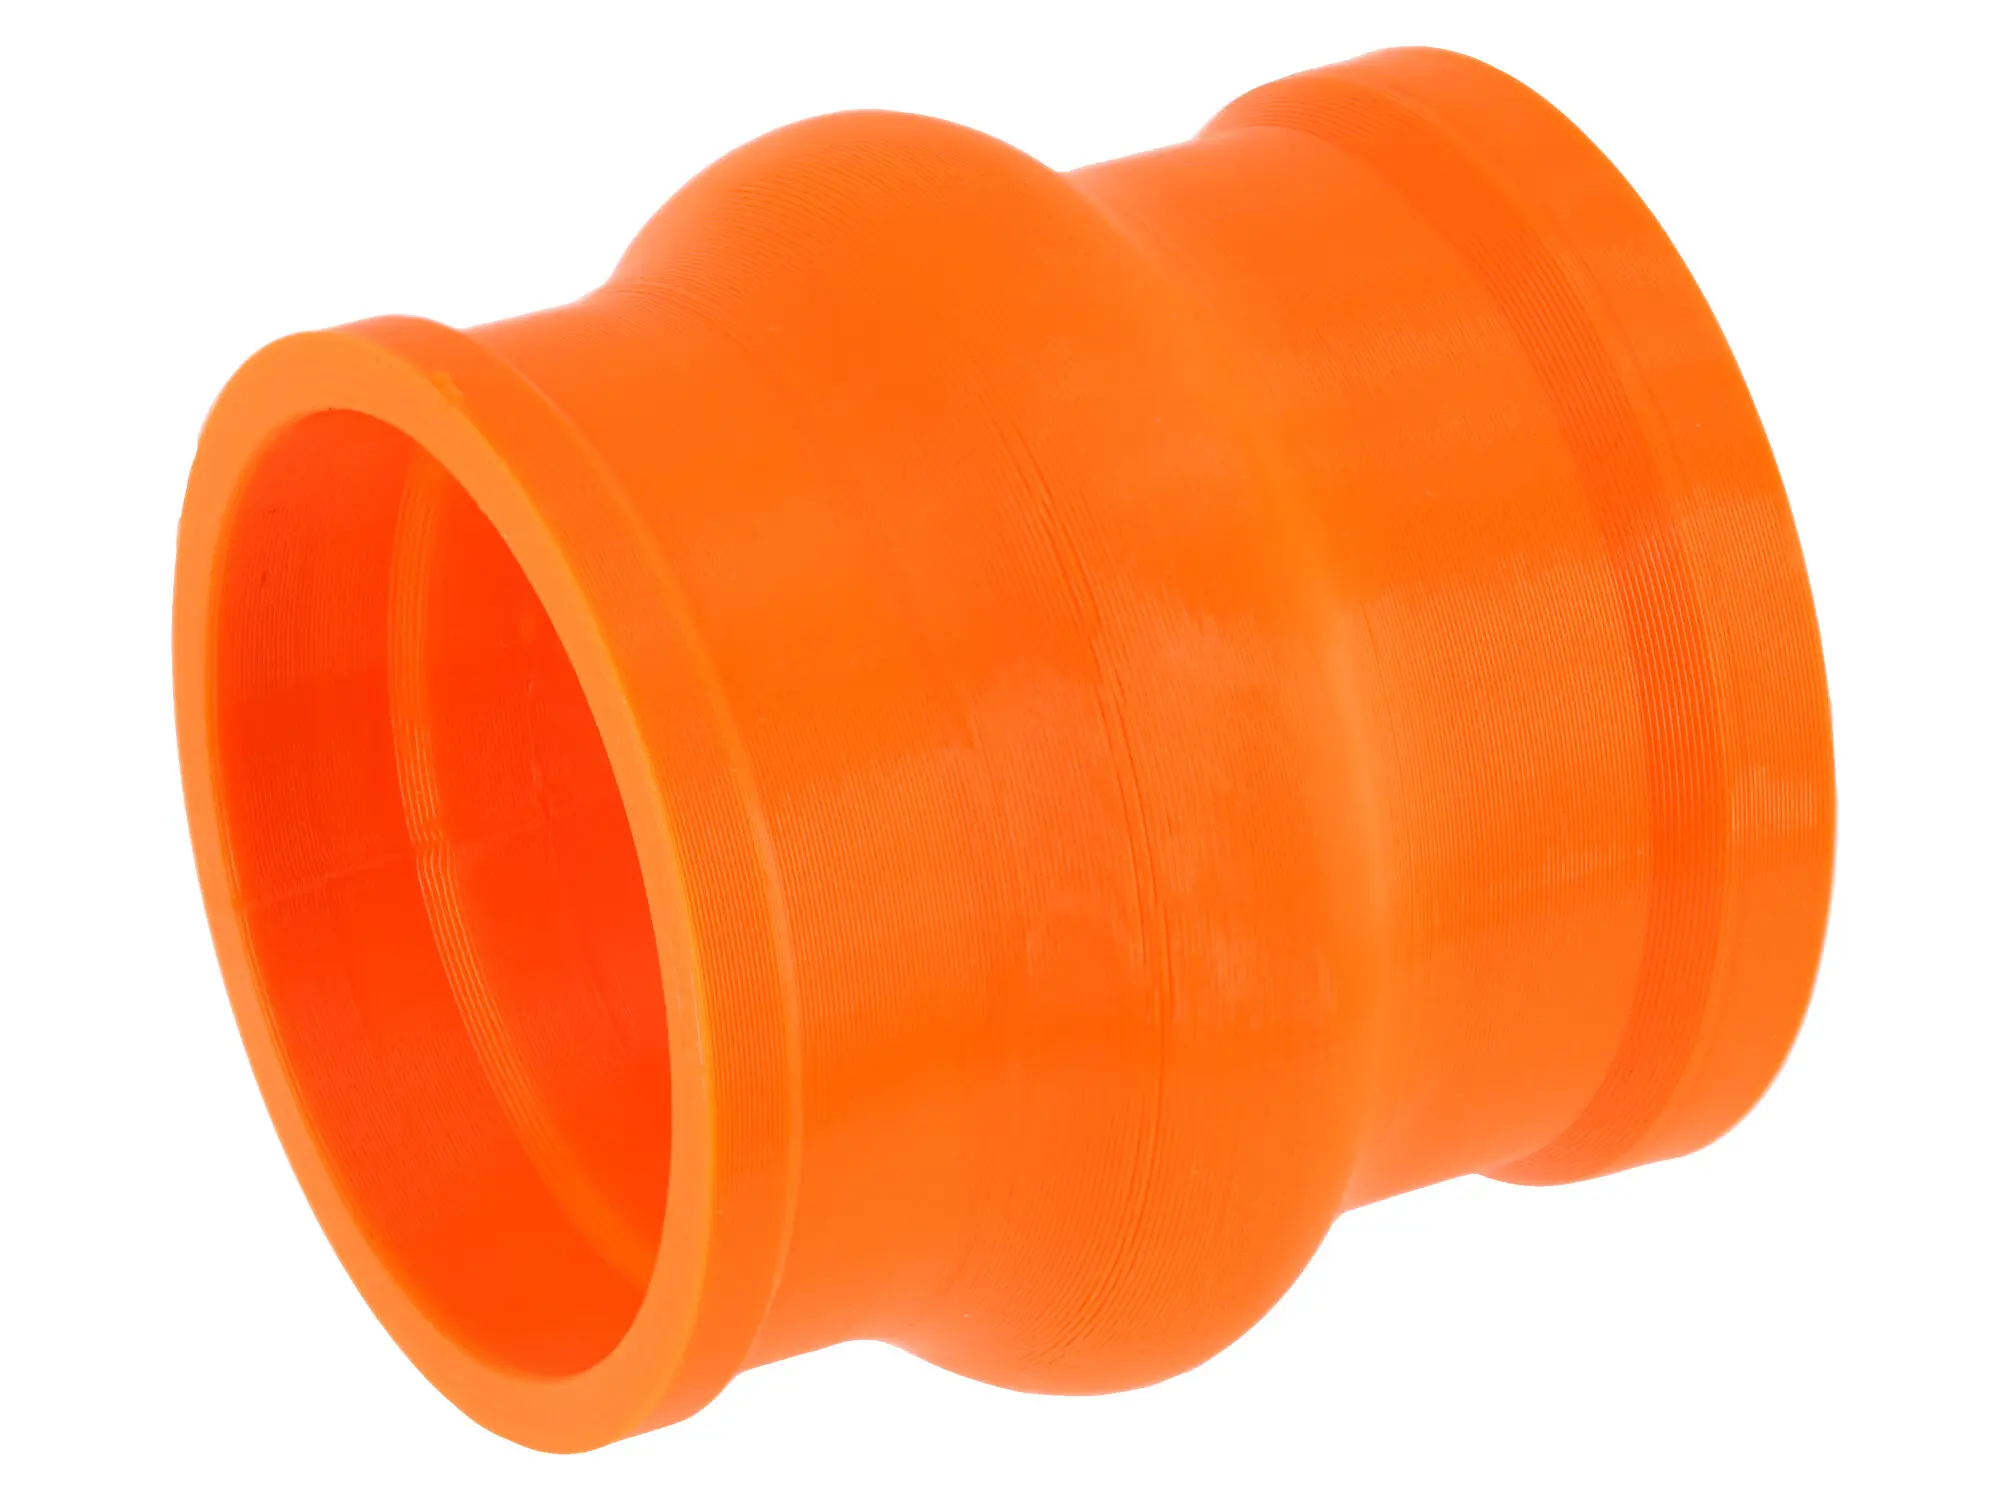 Ansaugmuffe Orange, 3D-Druck, für Gehäusemittelteil Tuning auf Tuning-Vergaser - für S51, S50, S70, S53, S83, Art.-Nr.: 10073109 - Bild 1